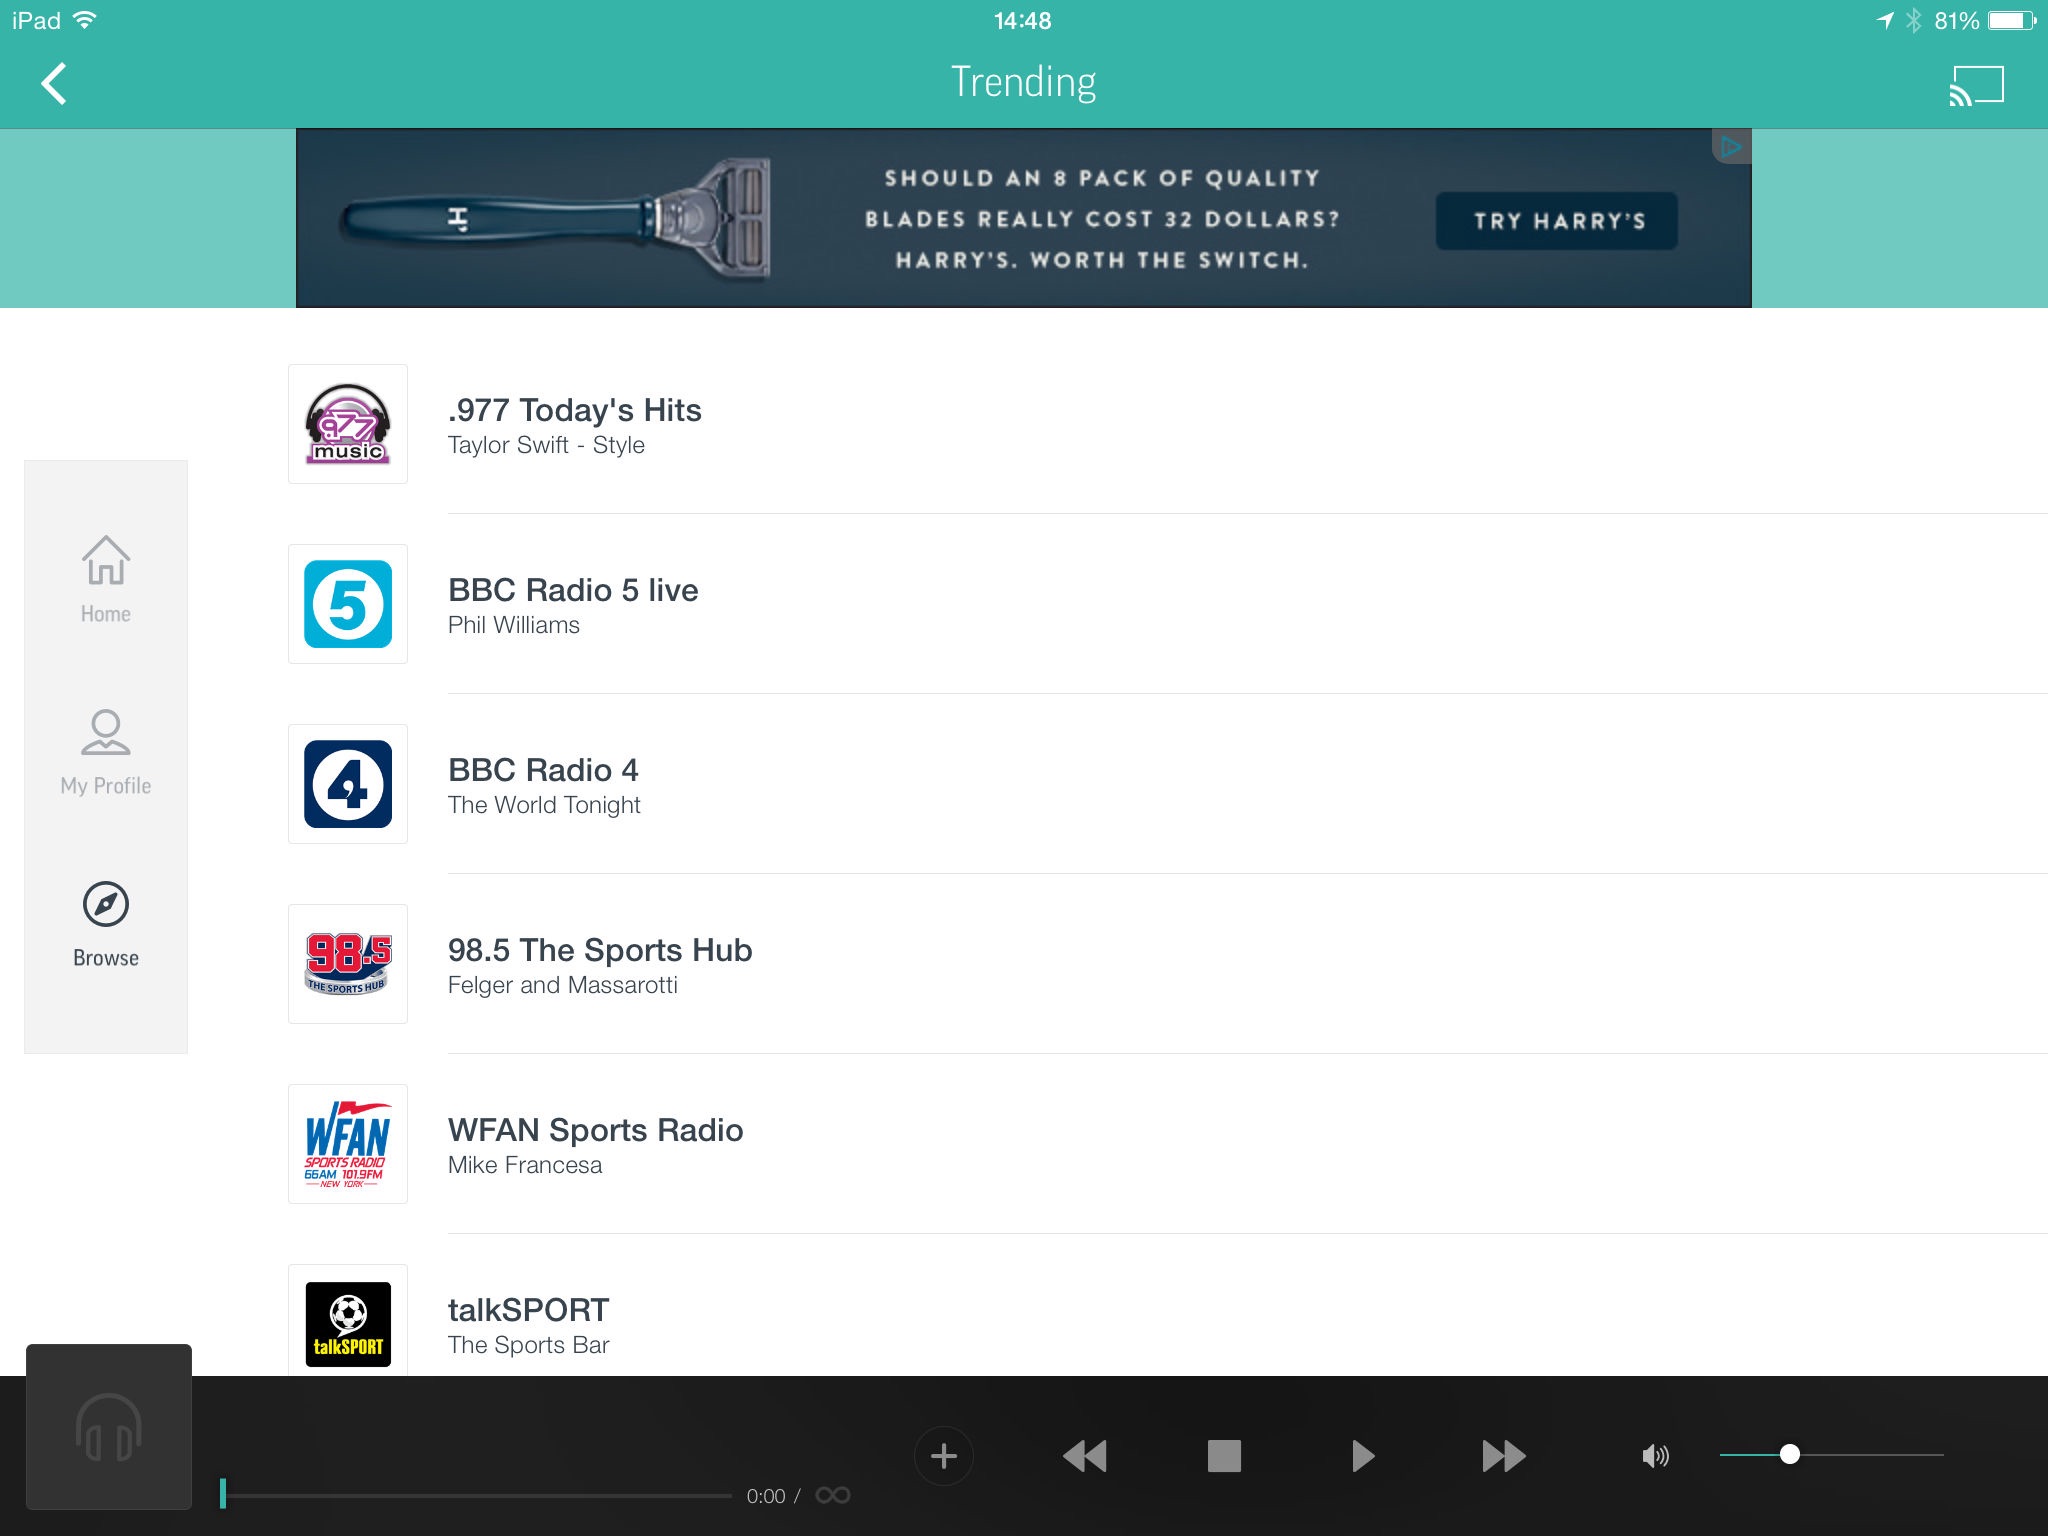 TuneIn Radio: Music & Sports screenshot 2